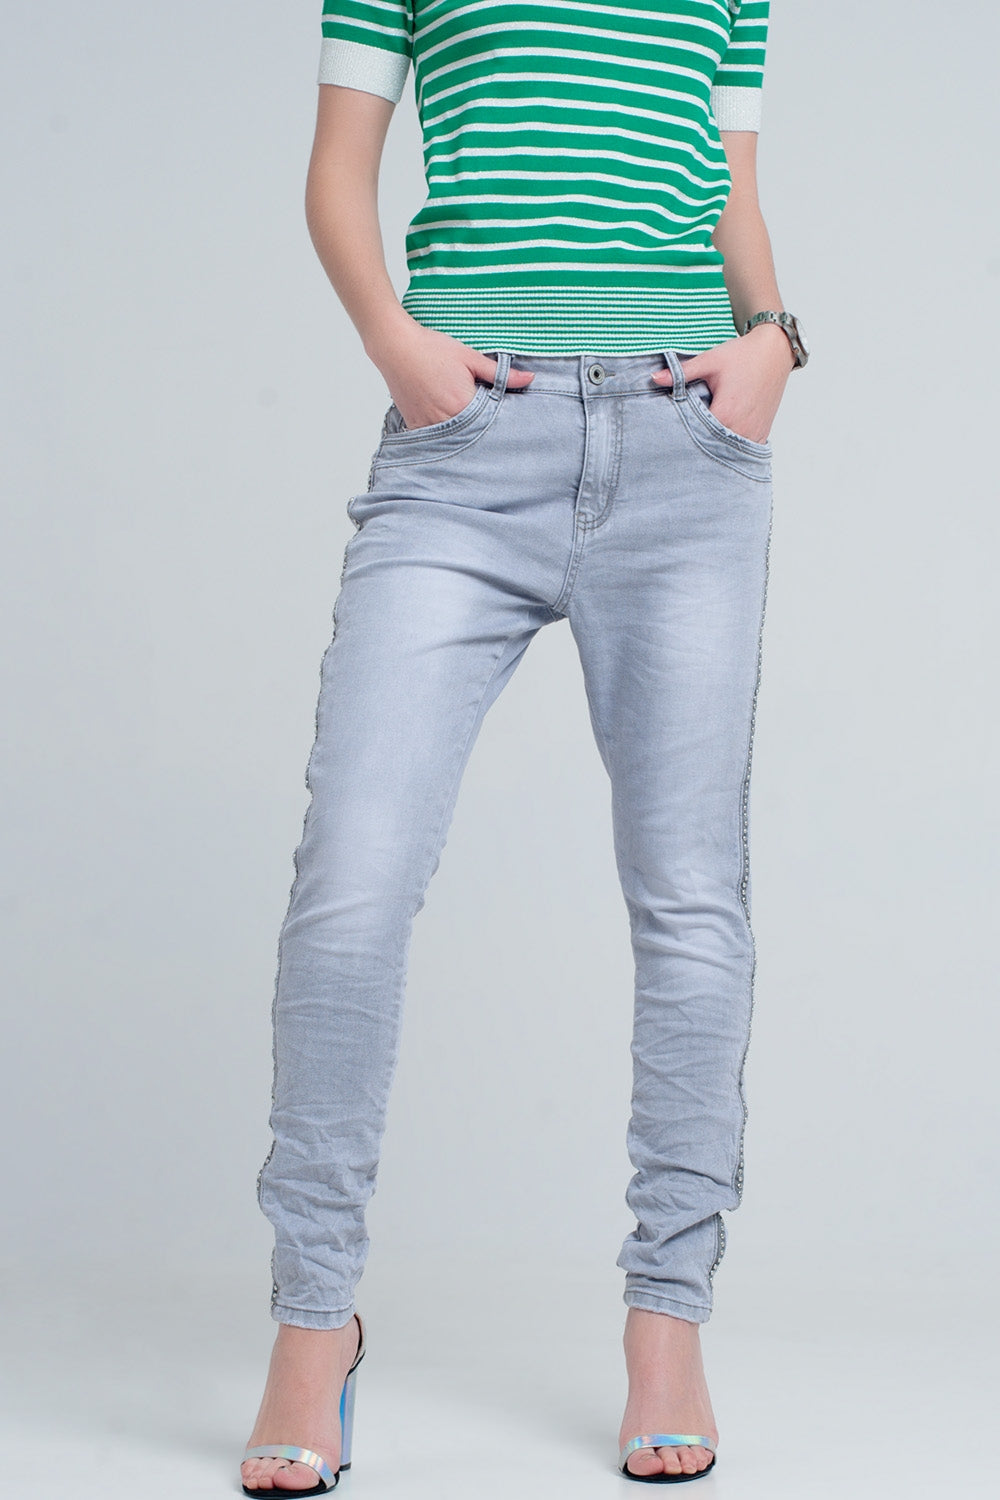 jeans grigio con dettaglio metallico